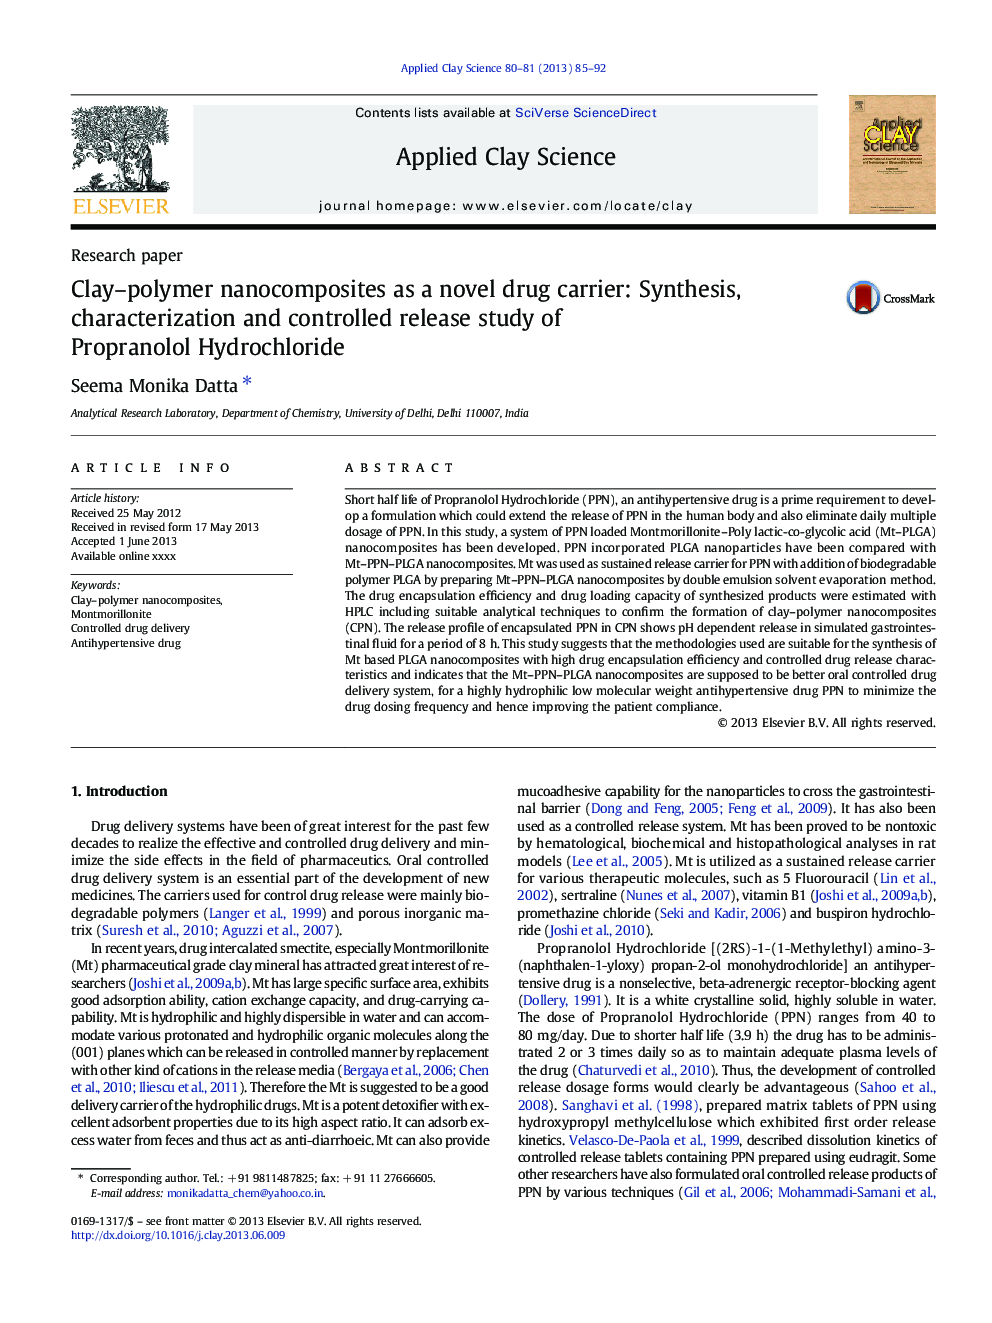 نانوکامپوزیتهای پلیمرهای رسوبی به عنوان یک دارنده جدید دارو: سنتز، خصوصیات و مطالعه آزمایشی کنترل پروپرانولول هیدروکلراید 